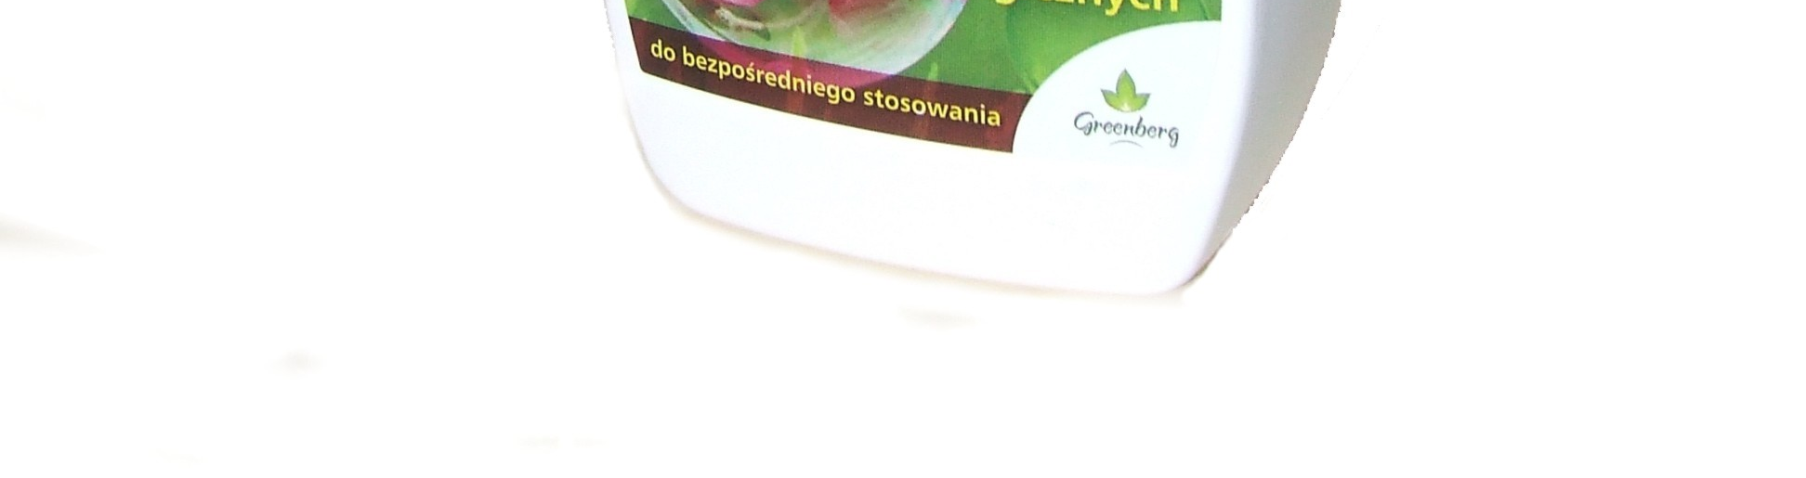 Potasowe mydło ogrodnicze - bezpieczna zakrętka z miarką - dla ogrodów, działek i gospodarstw ekologicznych wytwarzane z czystych i naturalnych olejów roślinnych bezpieczne dla środowiska Potasowe